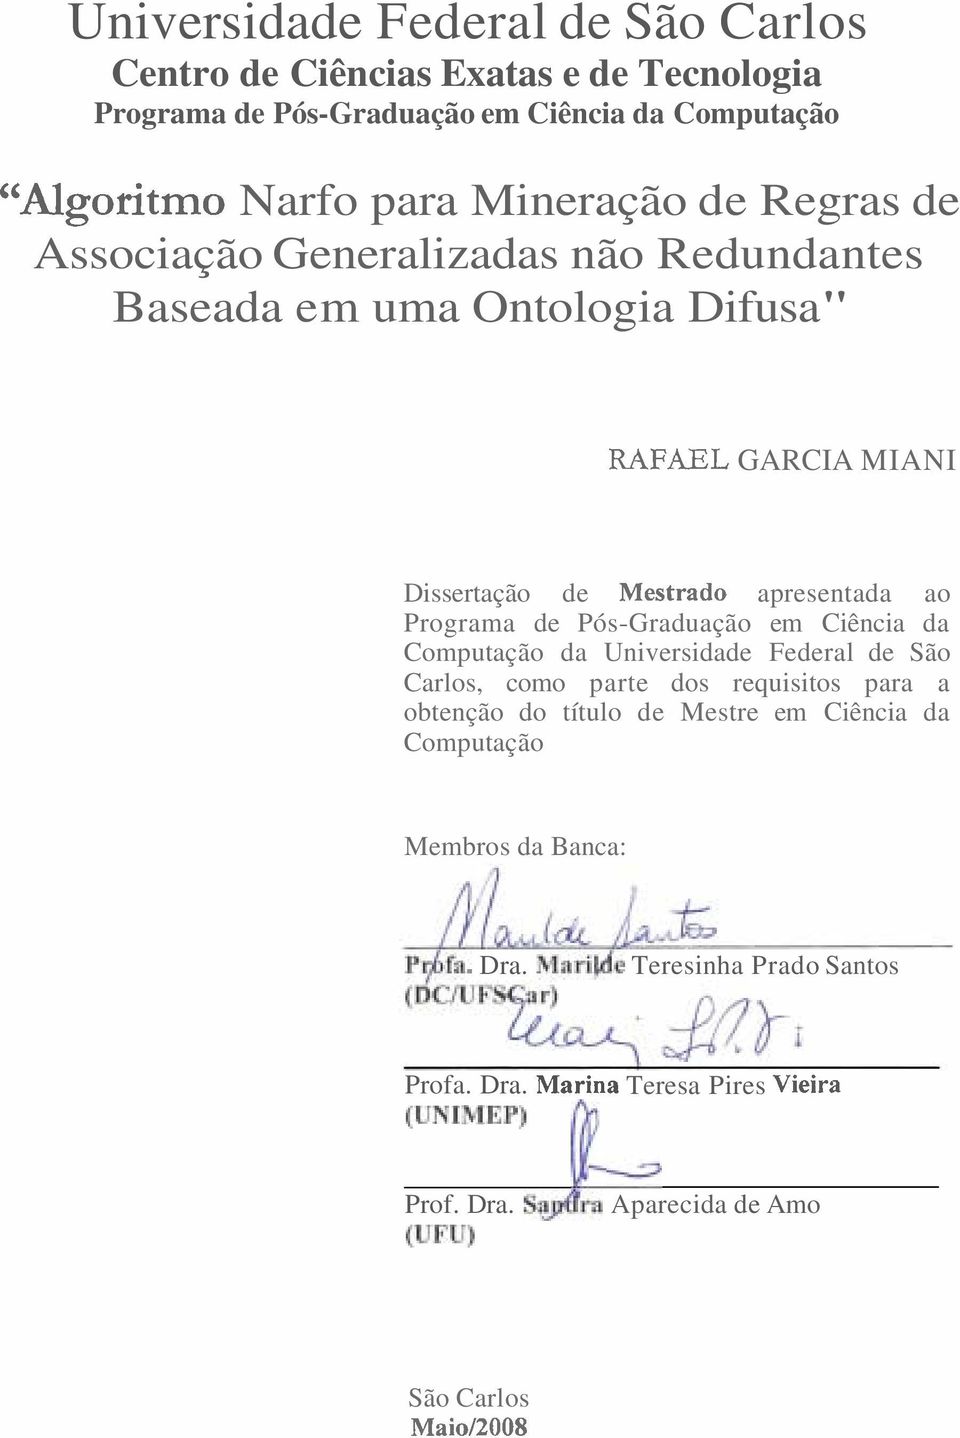 Pós-Graduação em Ciência da Computação da Universidade Federal de São Carlos, como parte dos requisitos para a obtenção do título de Mestre em Ciência da